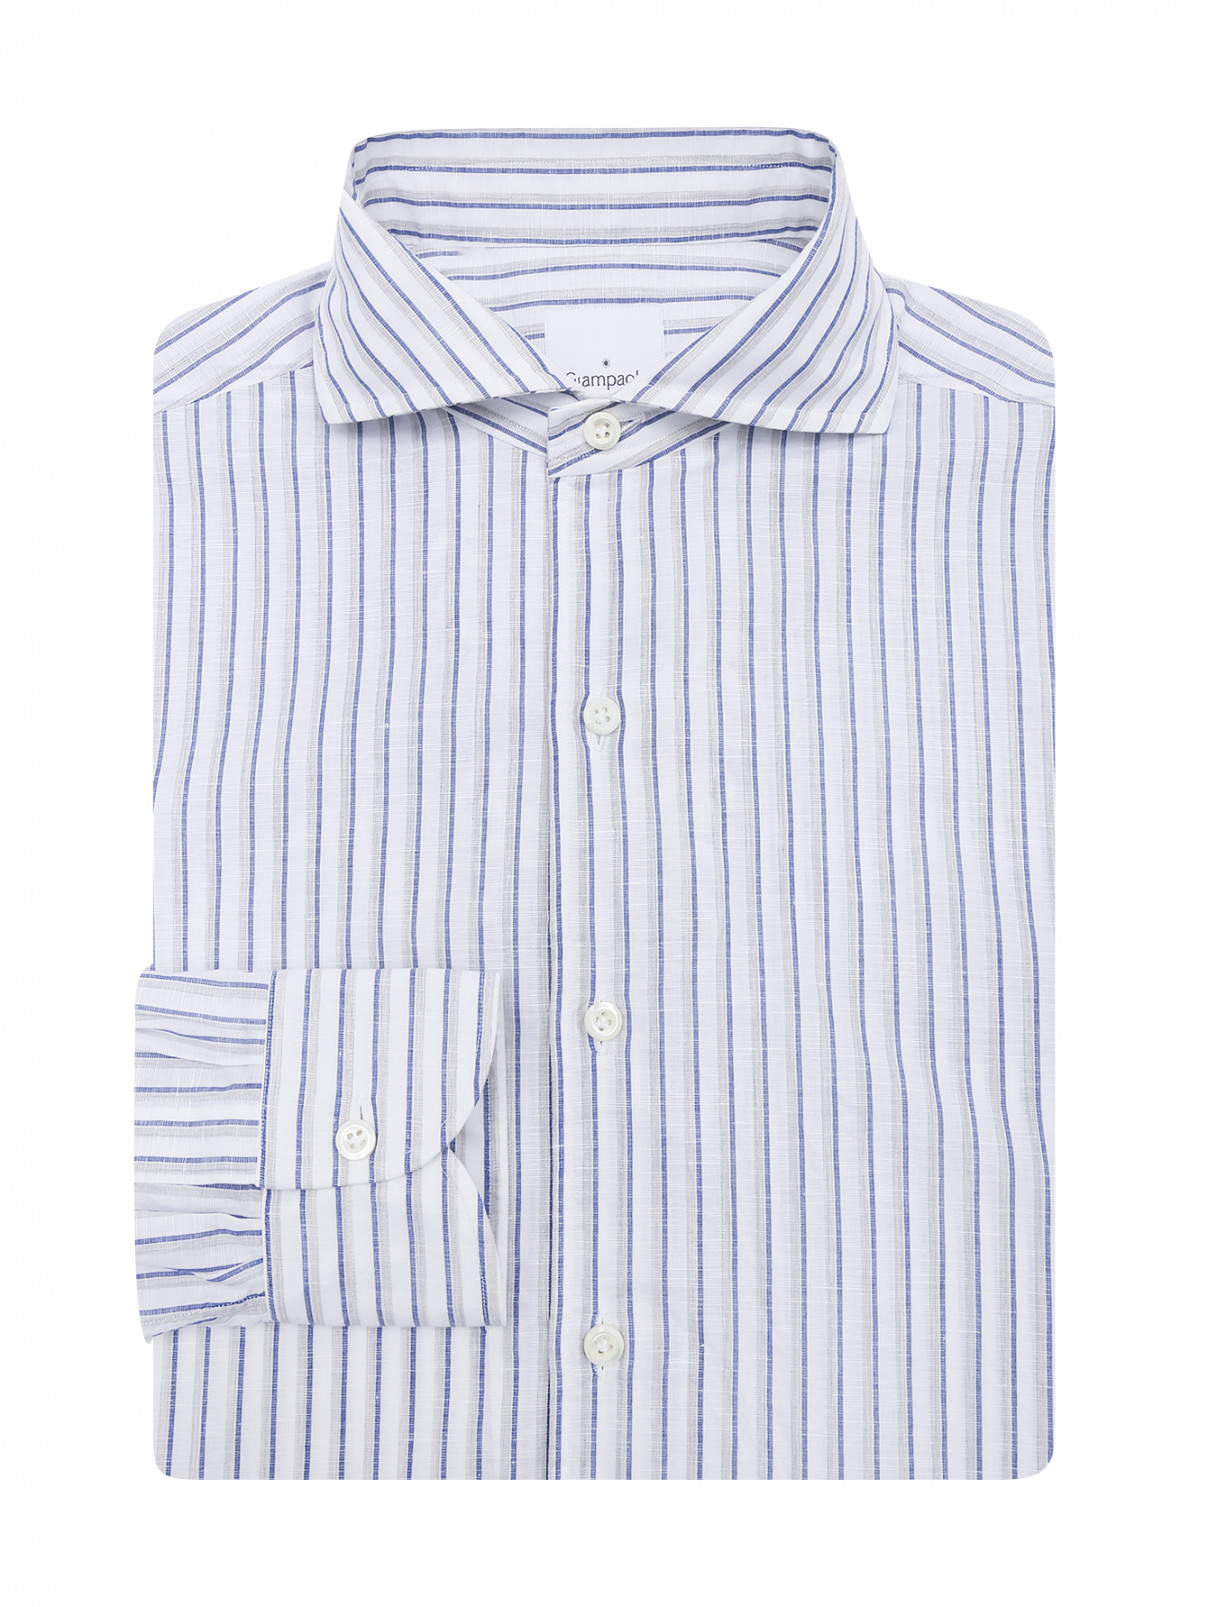 Рубашка из хлопка с узором Giampaolo  –  Общий вид  – Цвет:  Белый